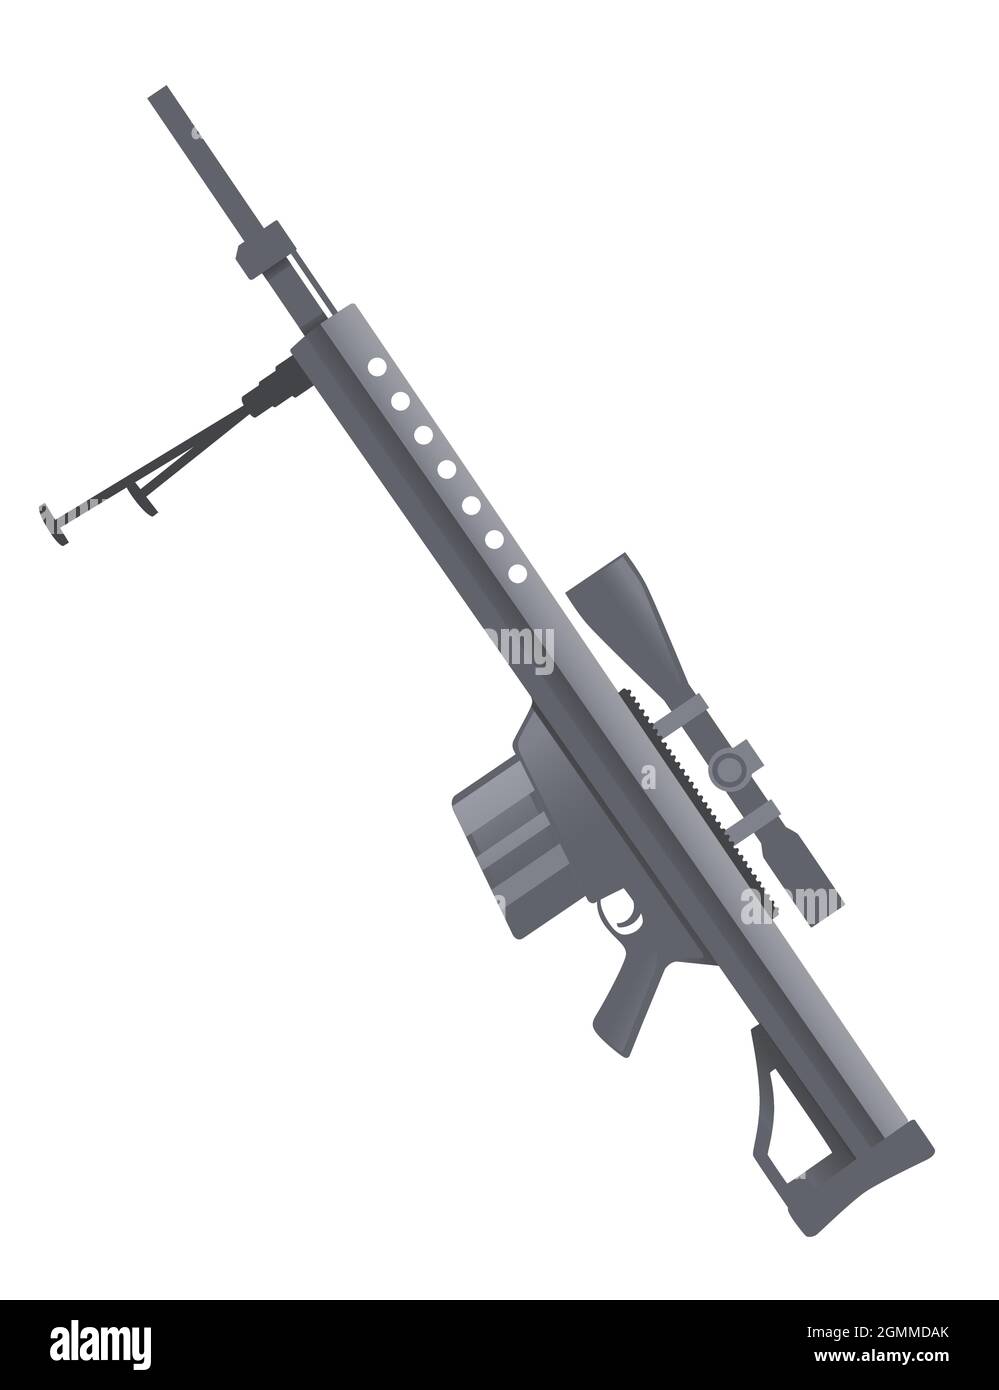 .50 cal Scharfschützengewehr mit Zielfernrohr und Zweibein .50 BMG Moderne Waffe Vektor-Illustration auf weißem Hintergrund Stock Vektor